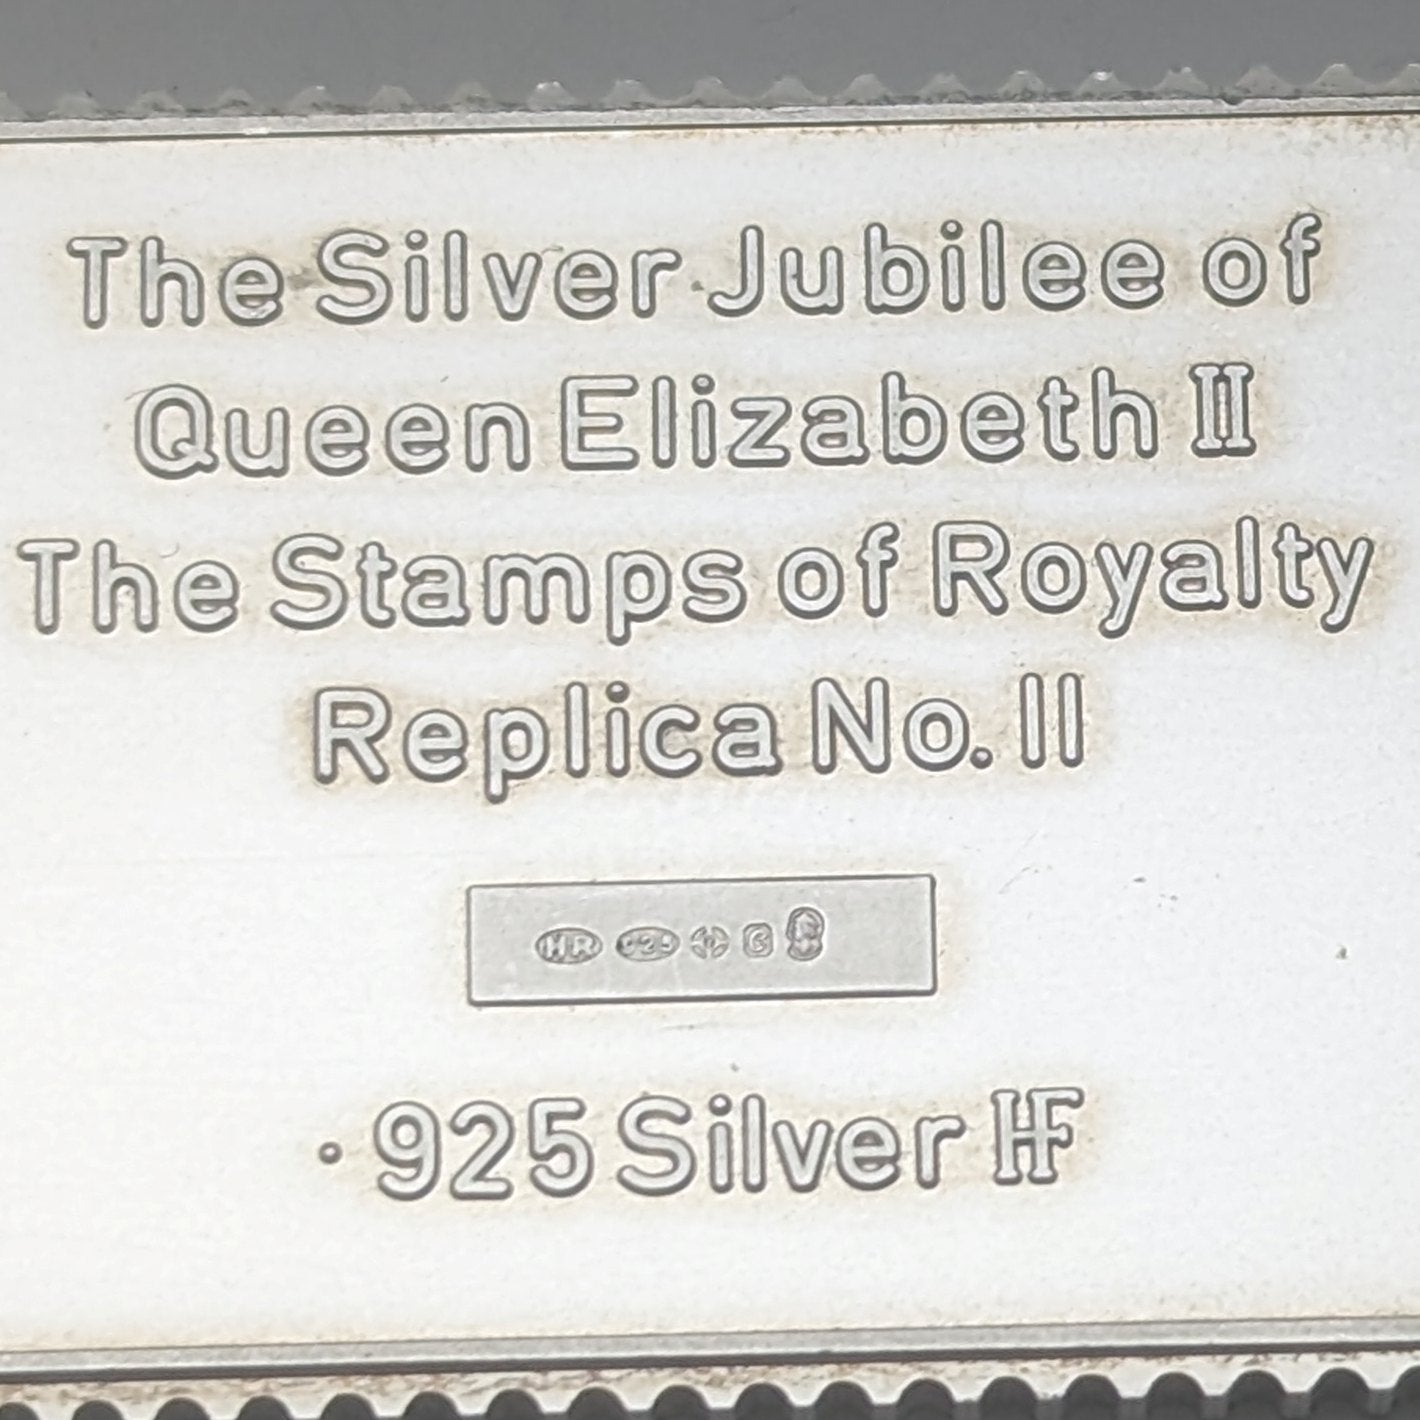 1977年 エリザベスⅡ世 戴冠25周年ジュビリー 純銀製 1ポンド切手 